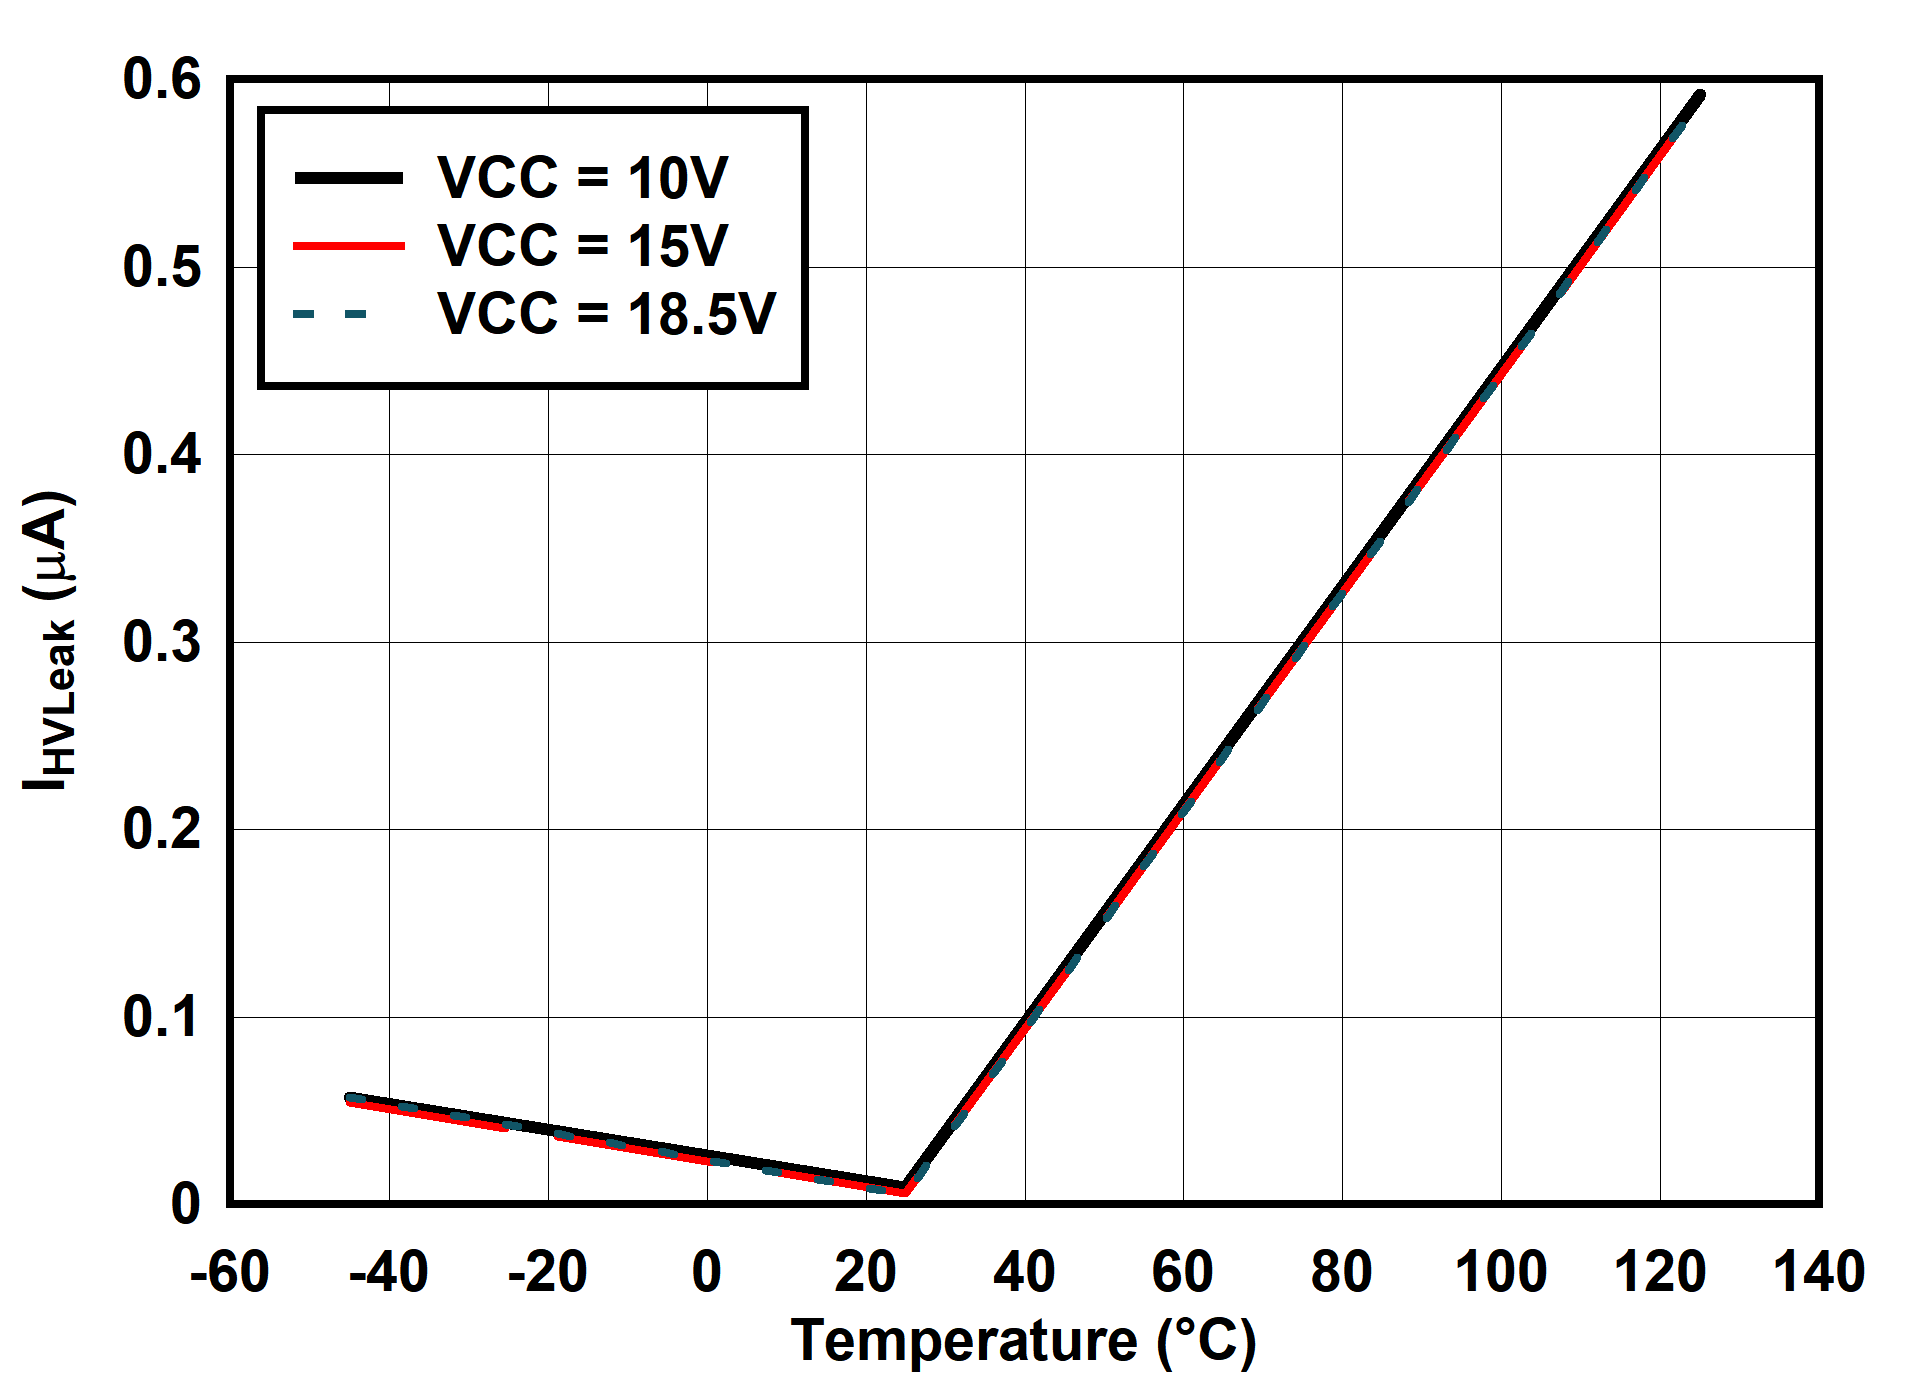 UCC25660 IHVLeak vs Temperature